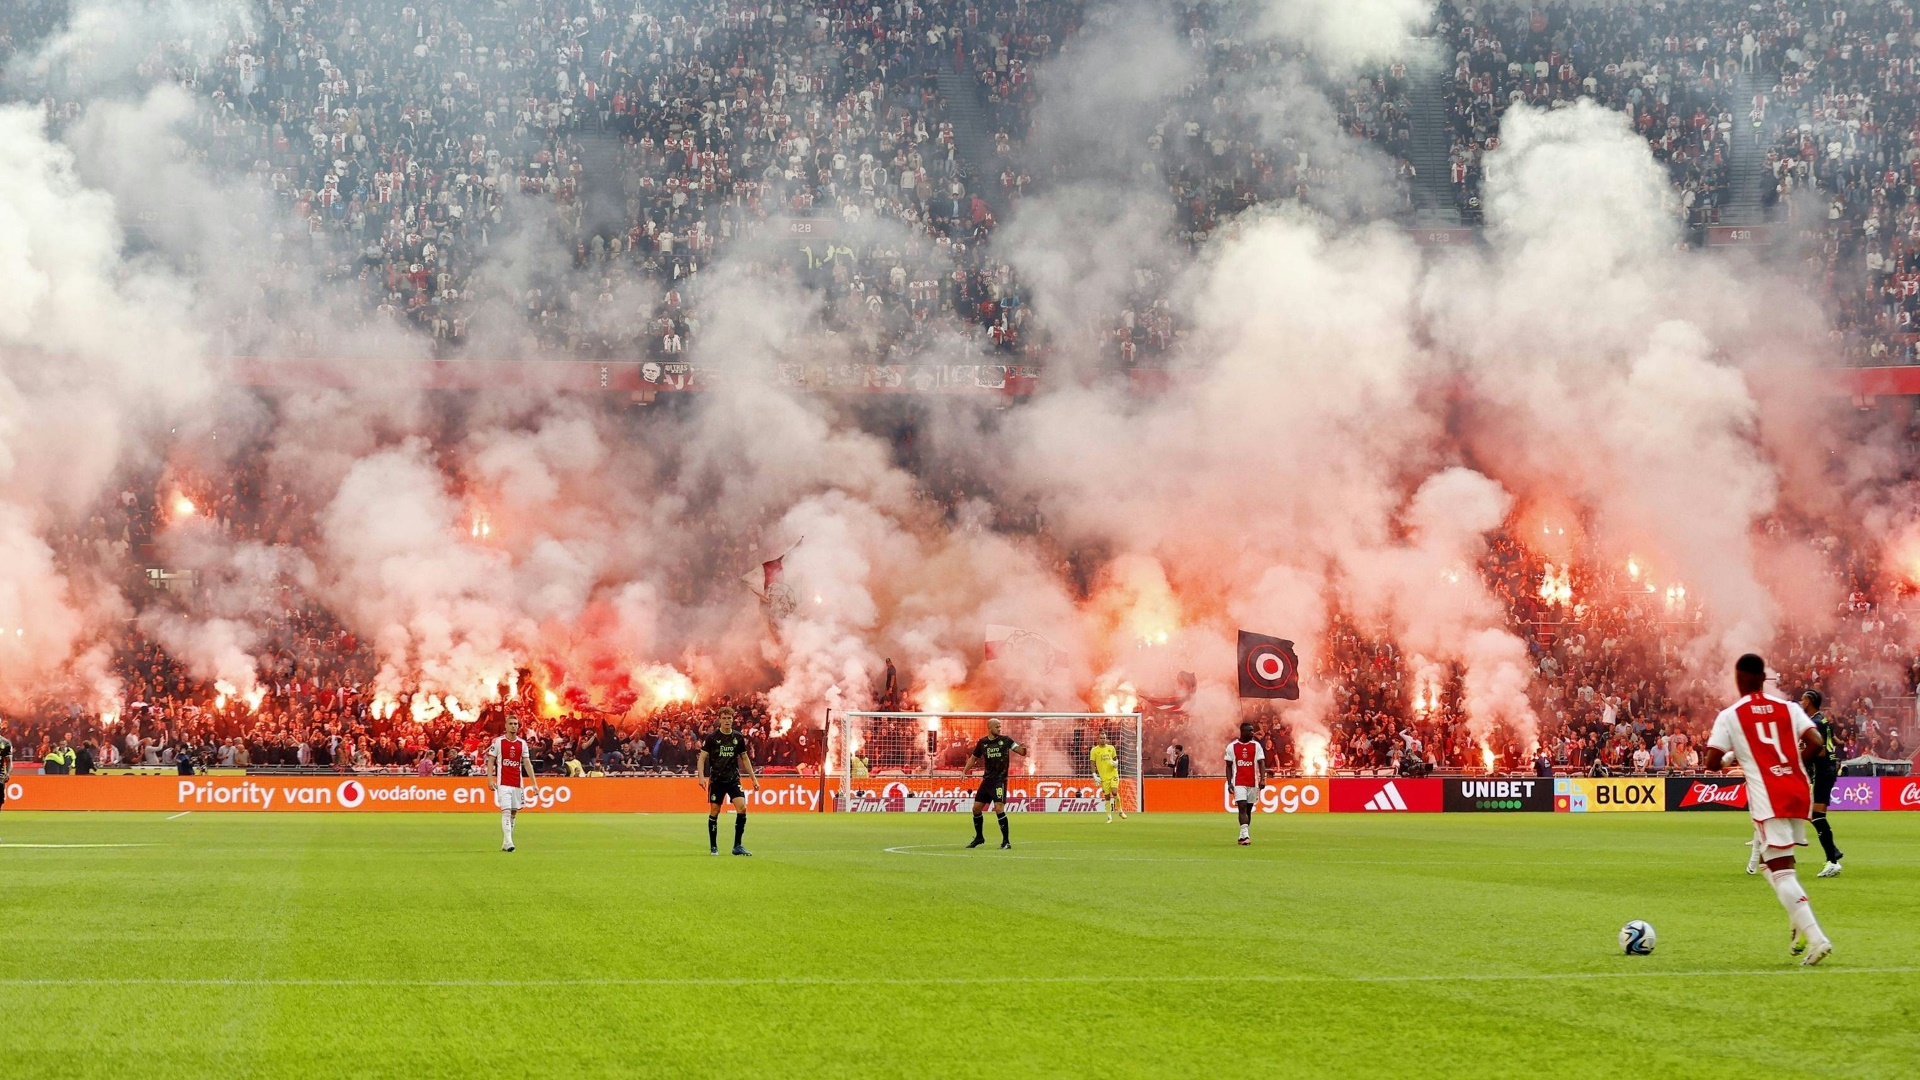 Das Spiel zwischen Ajax Amsterdam und Feyenoord Rotterdam wurde abgebrochen